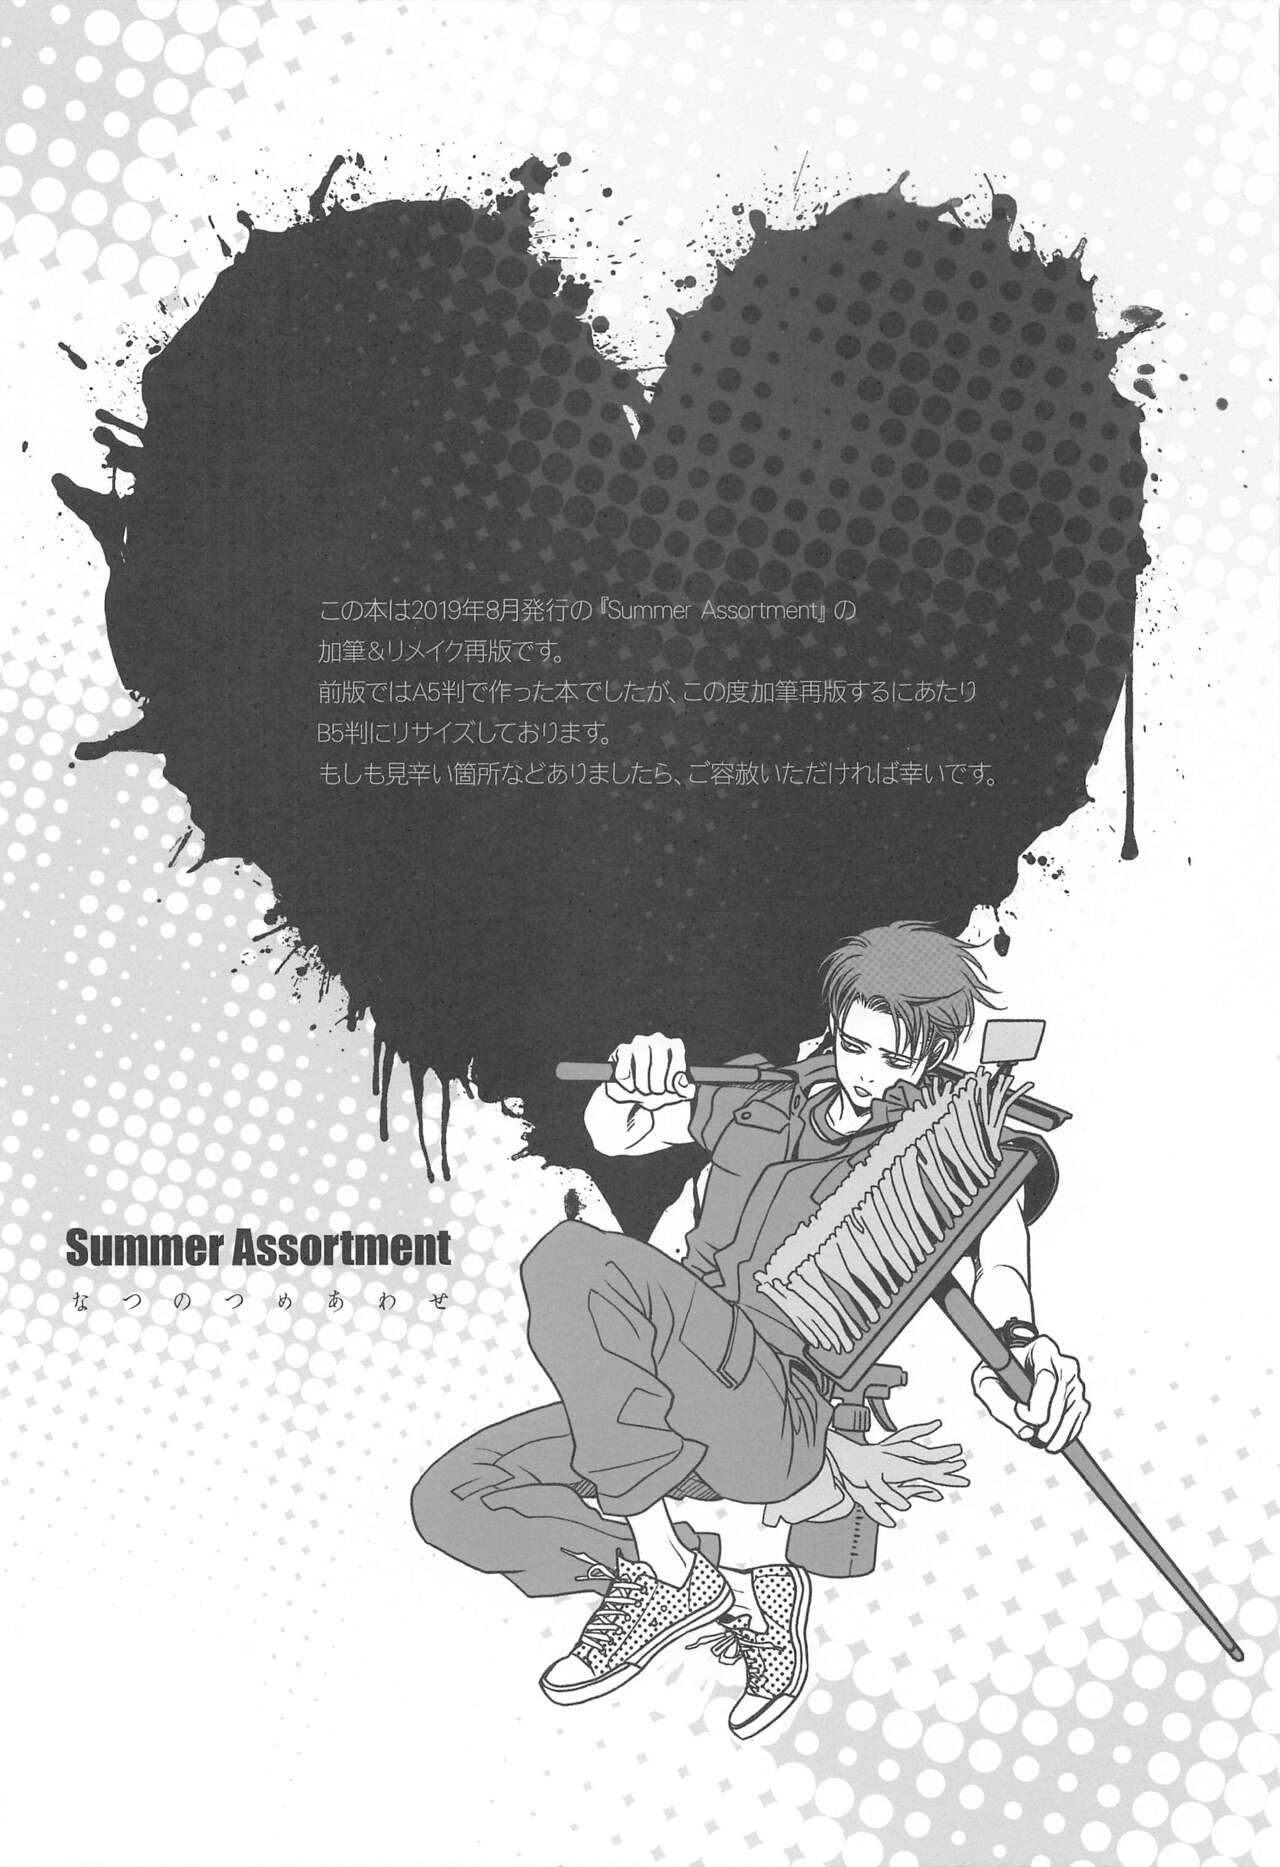 [MERRYAH] Summer Assortment Remake (進撃の巨人)